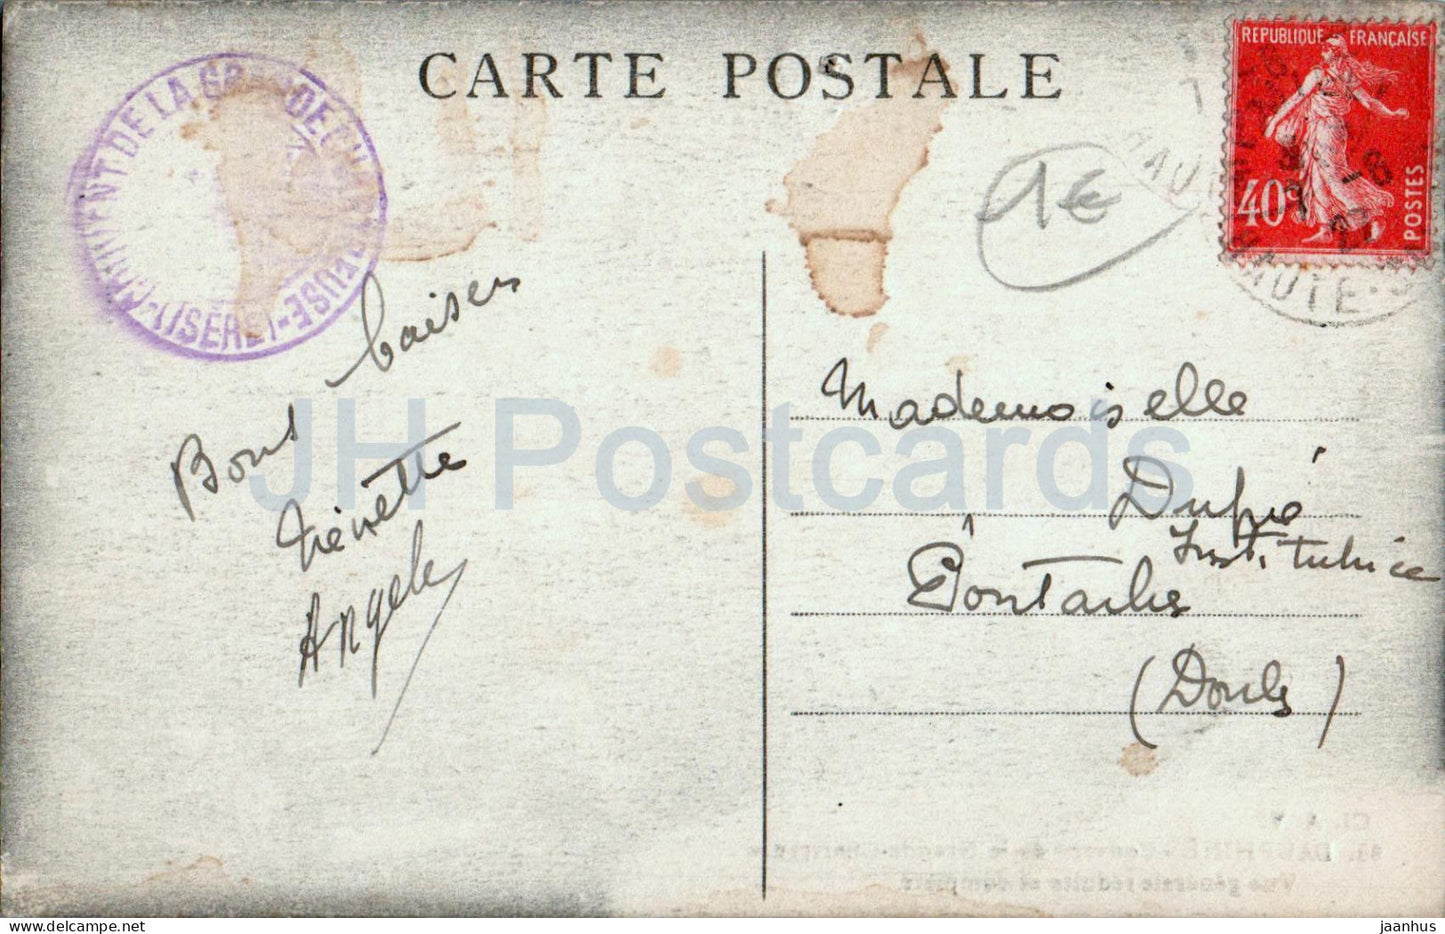 Dauphine – Couvent de la Grande Chartreuse – Vue Generale Reduite et Complete – 60 – alte Postkarte – 1927 – Frankreich – gebraucht 